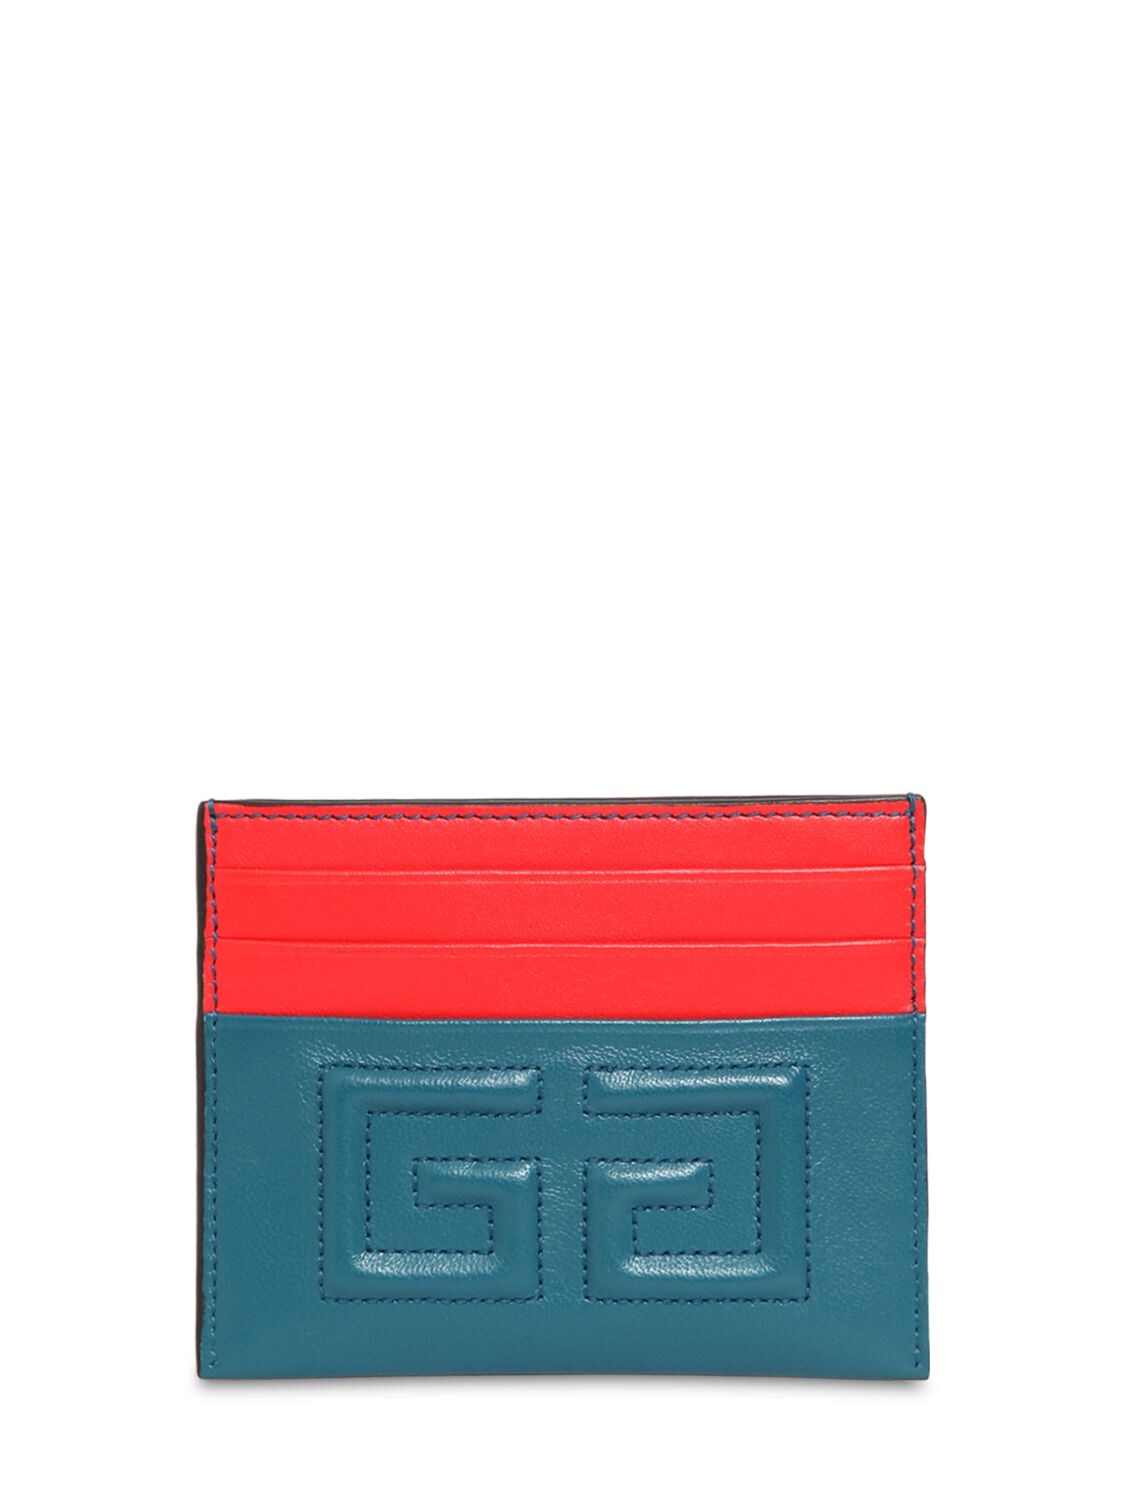 Givenchy Emblem Leather Card Holder In Blue,orange